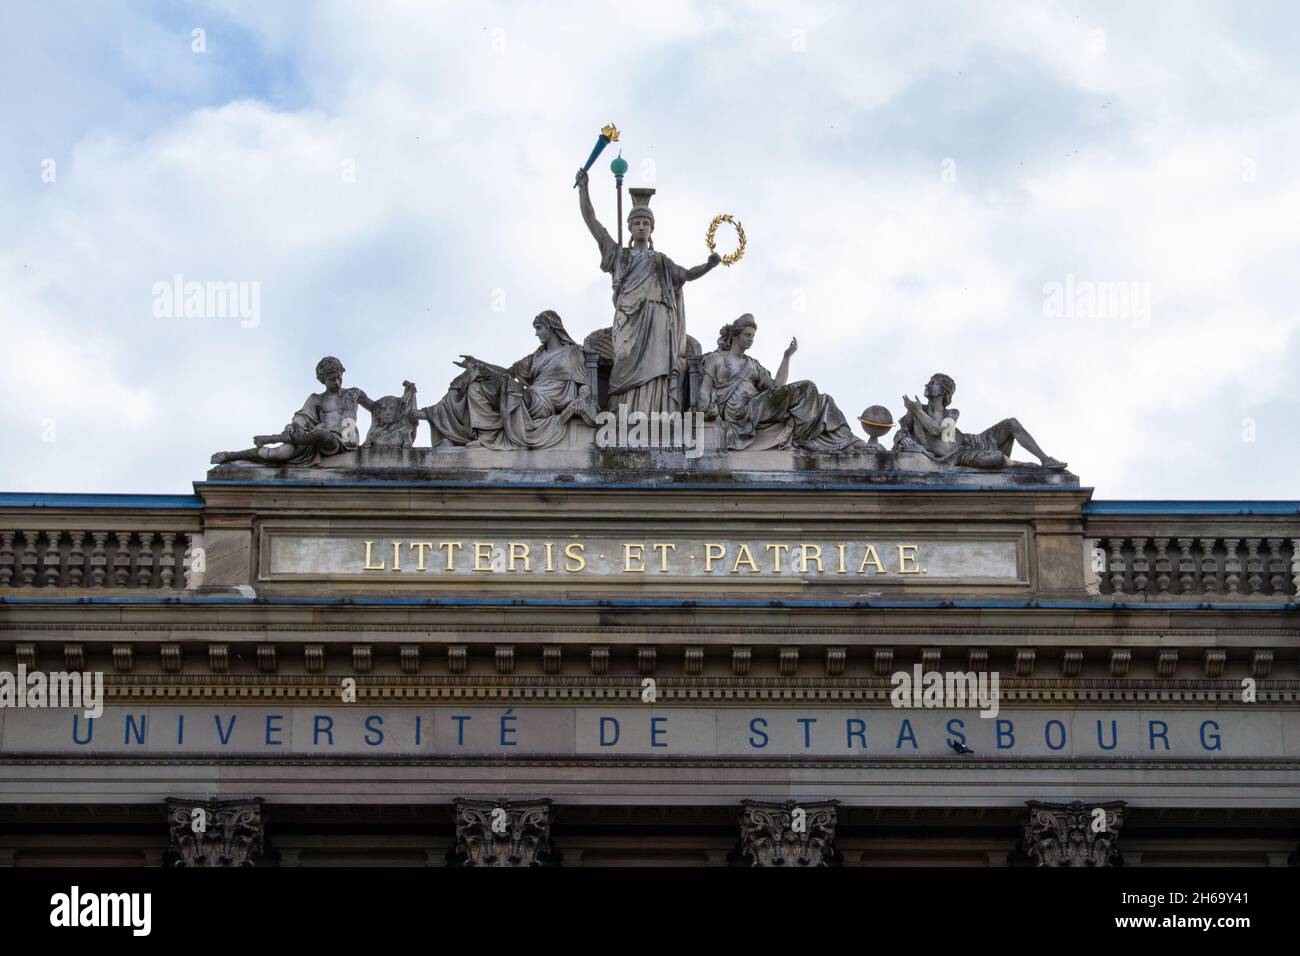 Strasbourg, France, le 31 octobre 2021, c'est une université multidisciplinaire qui compte près de 50,000 étudiants Banque D'Images